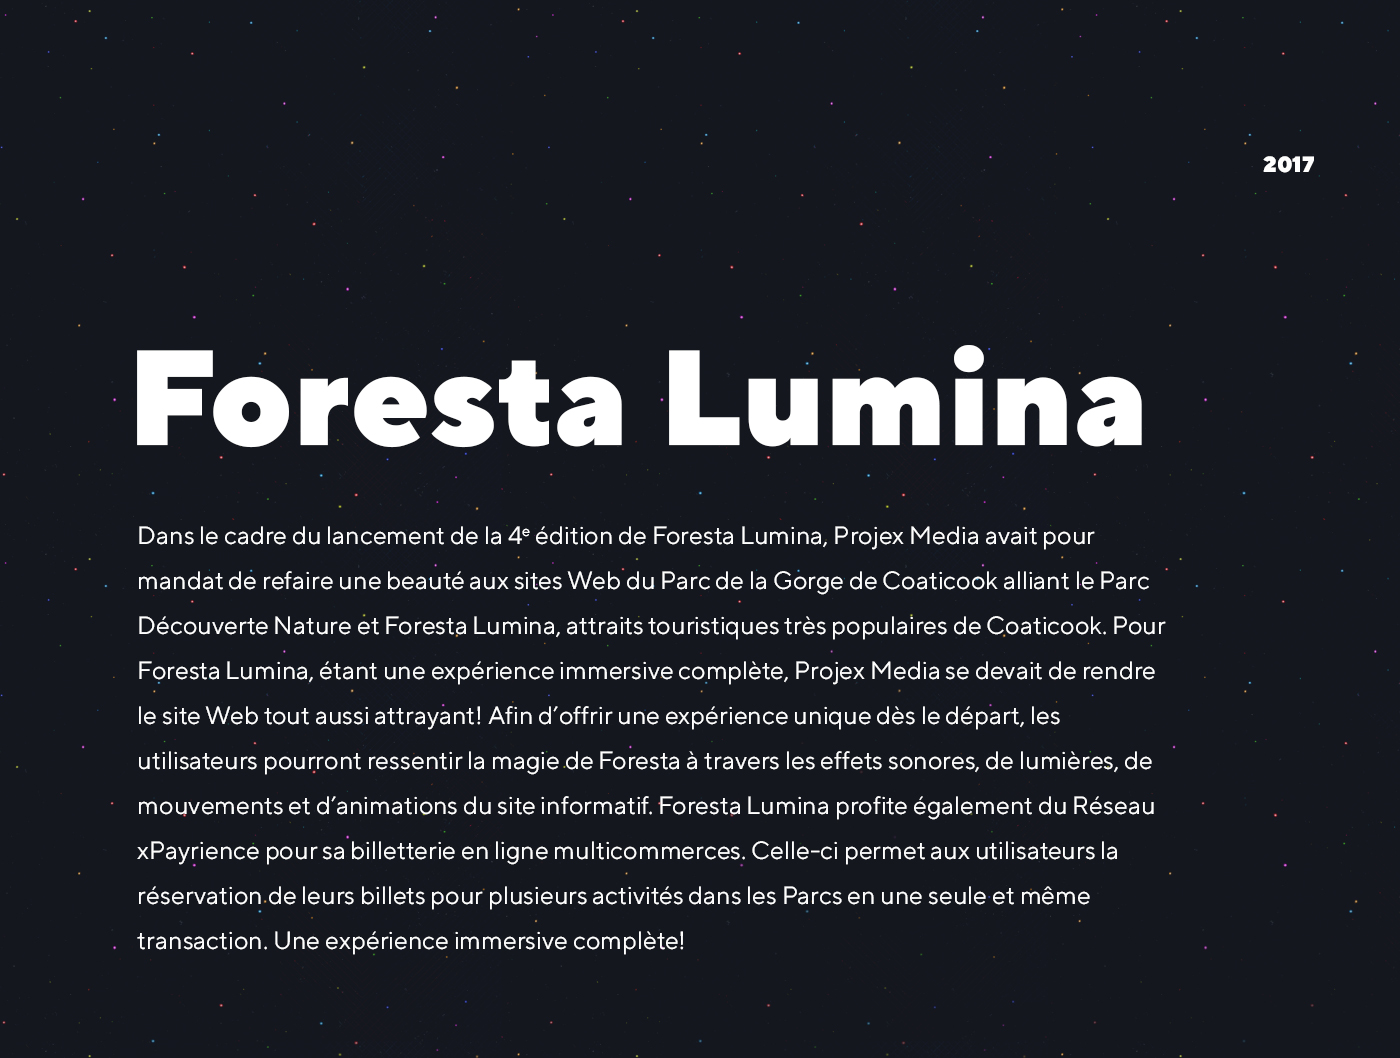 Conception d'un site web bilingue pour Foresta Lumina - attraits touristiques d'une expérience immersive de Coaticook / 2017 - Réalisation signée Projex Media